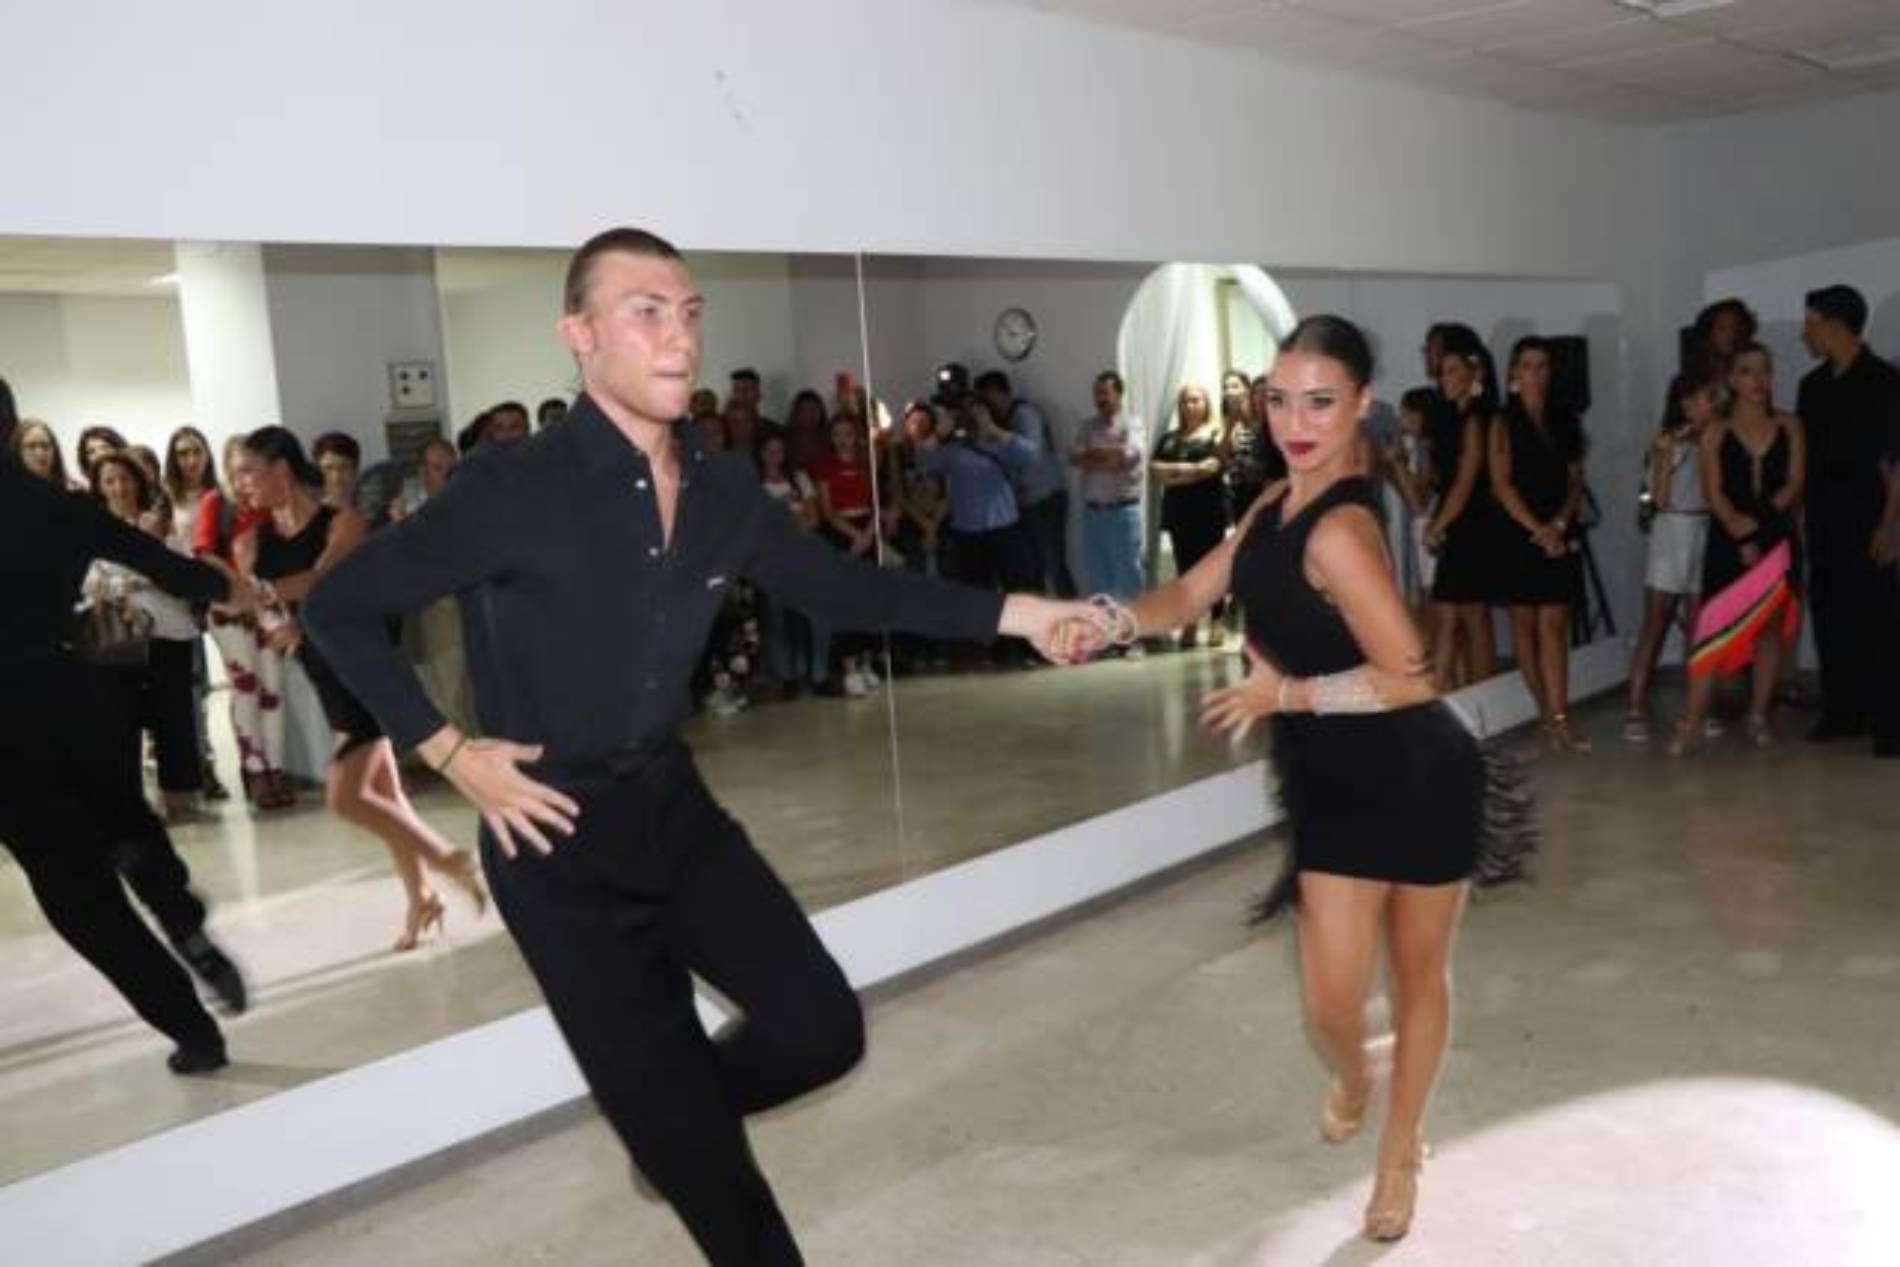 PIETRAPERZIA. Inaugurata la scuola di ballo “GS Dance” di Giada Spagnuolo”.  